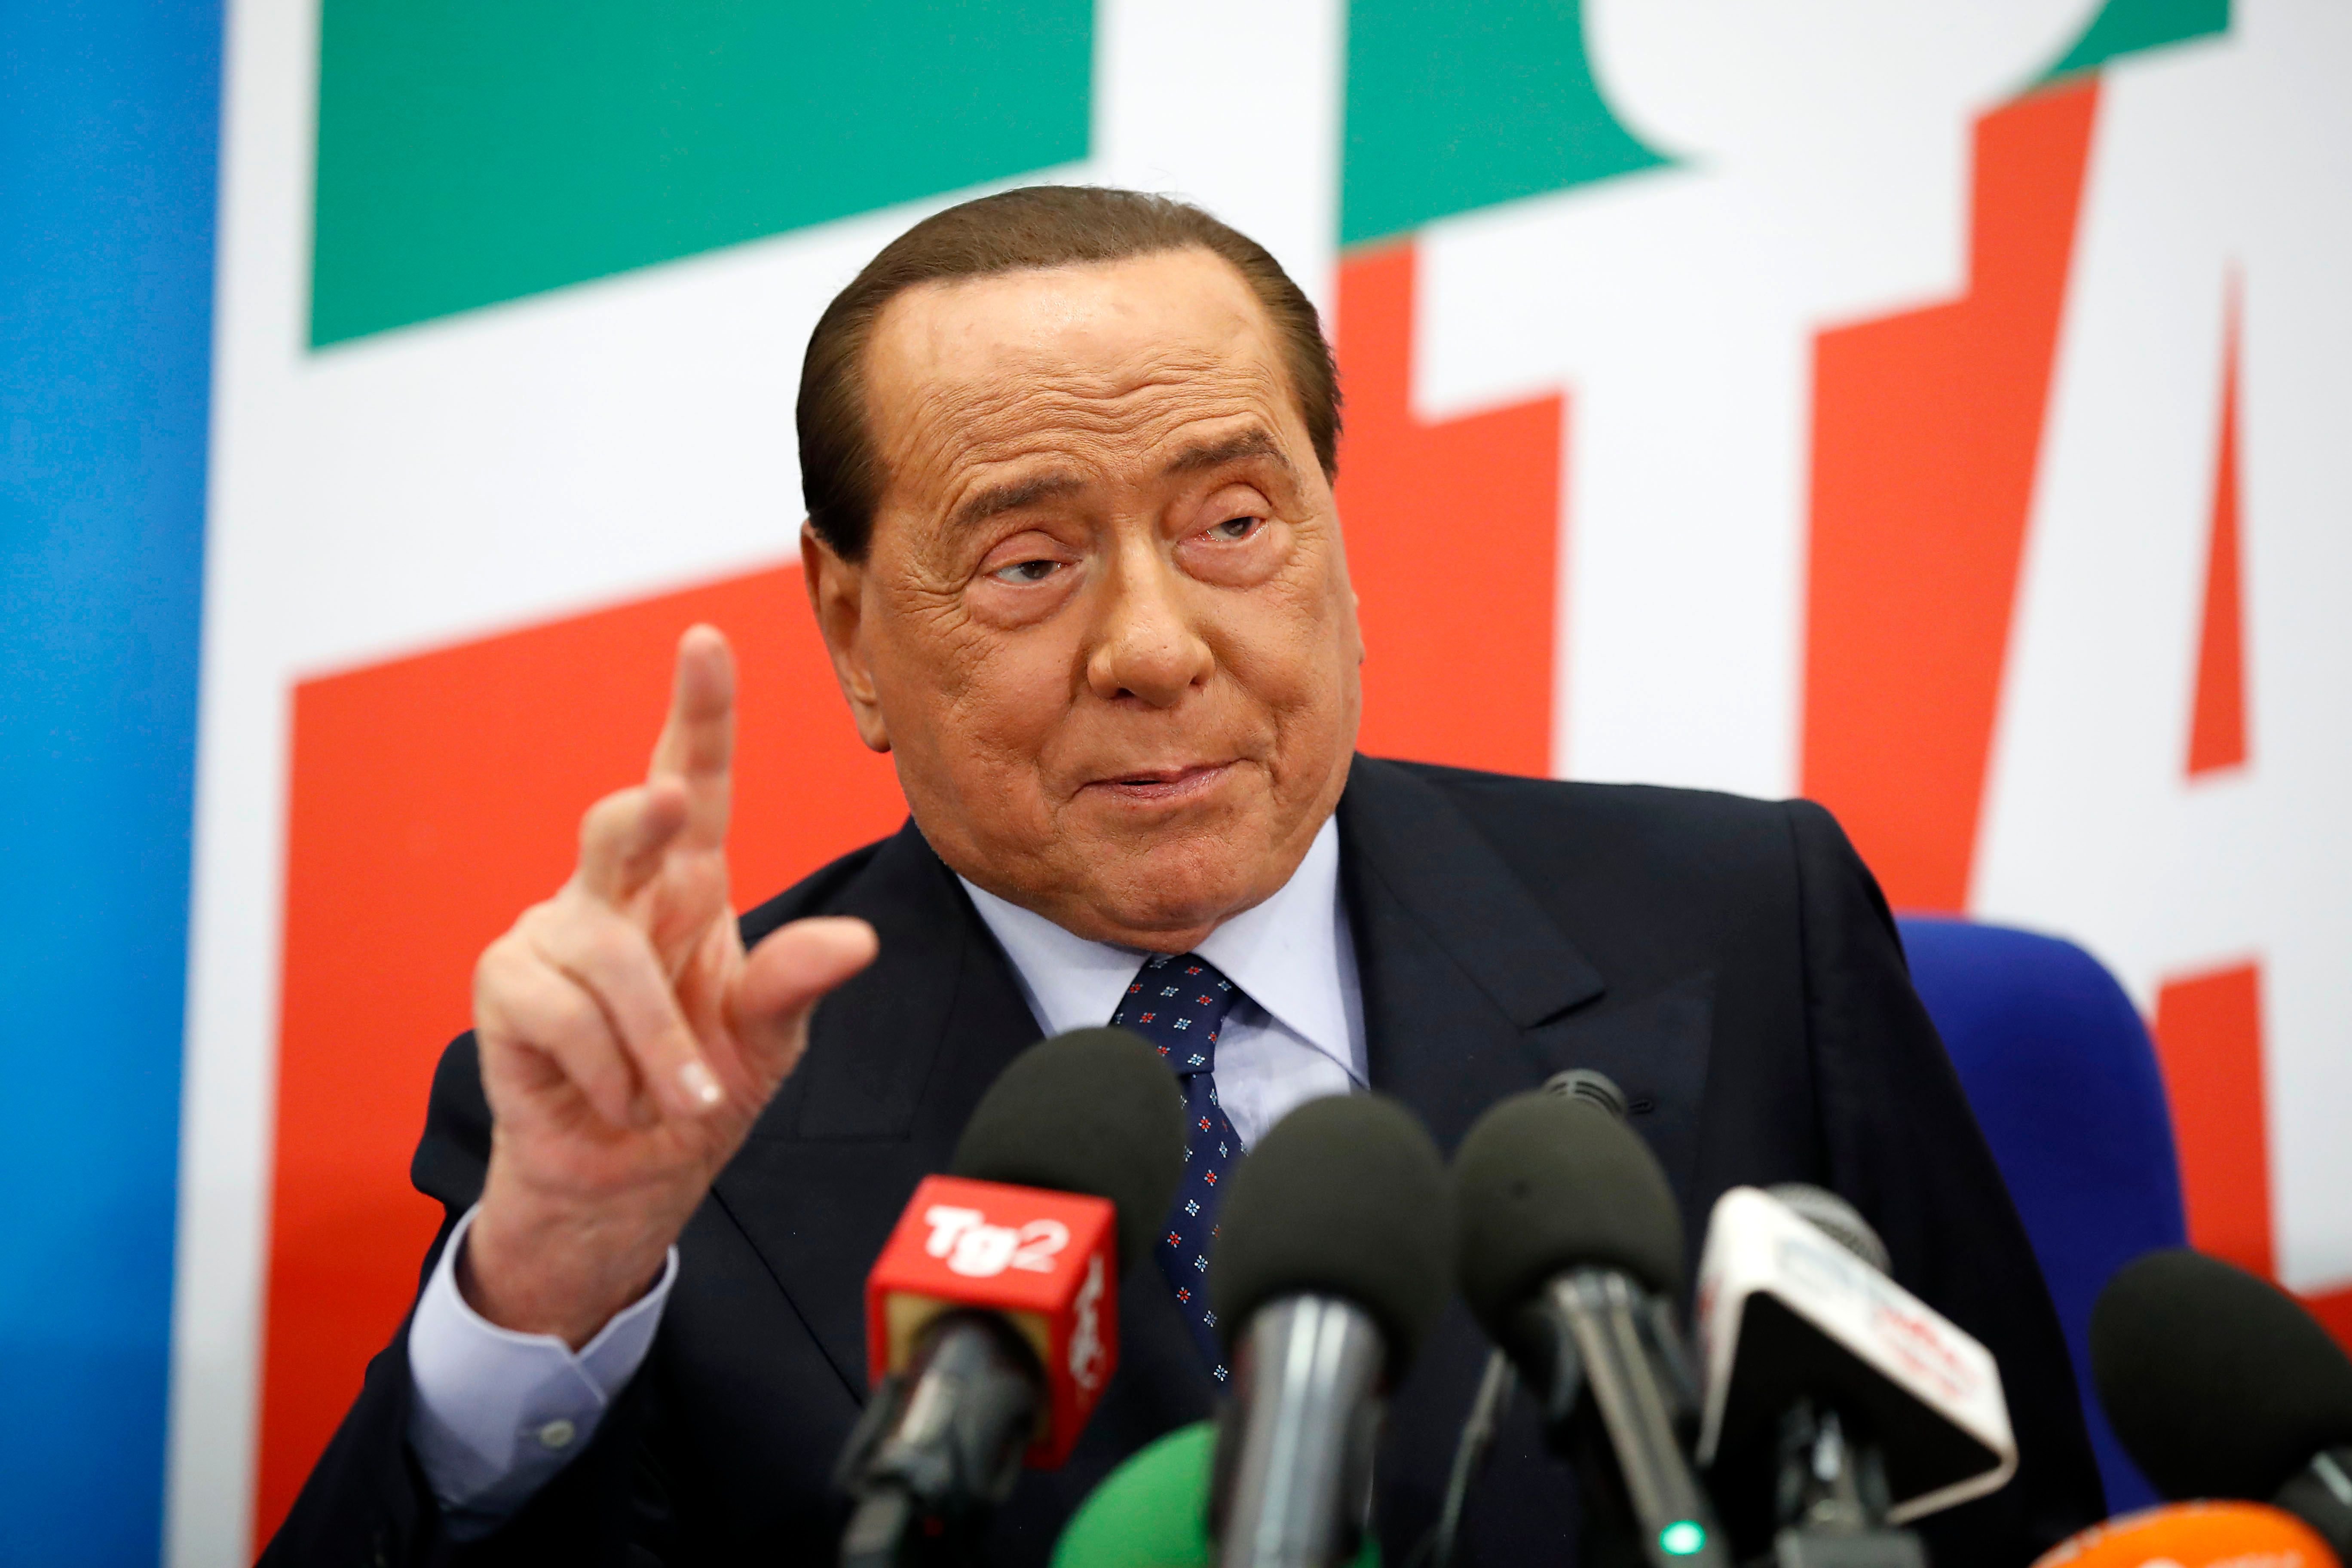 Forza Italia leader Silvio Berlusconi attends the presentation of the new book "Perché l'Italia diventò fascista" by Italian writer Bruno Vespa, on December 19, 2019 in Rome, Italy.  | Photo : Getty Images